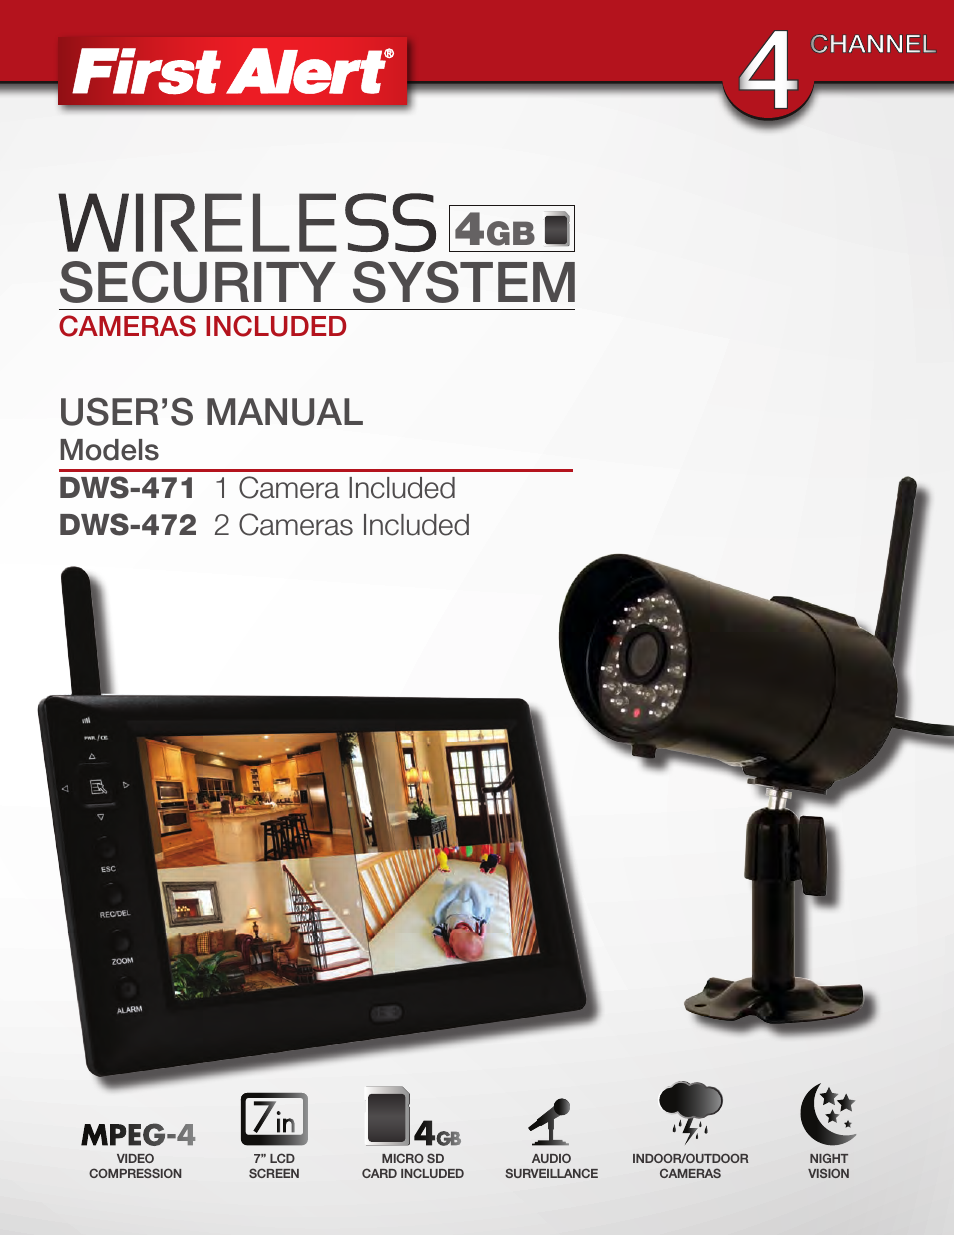 Wireless 4GB Security System DWS-471